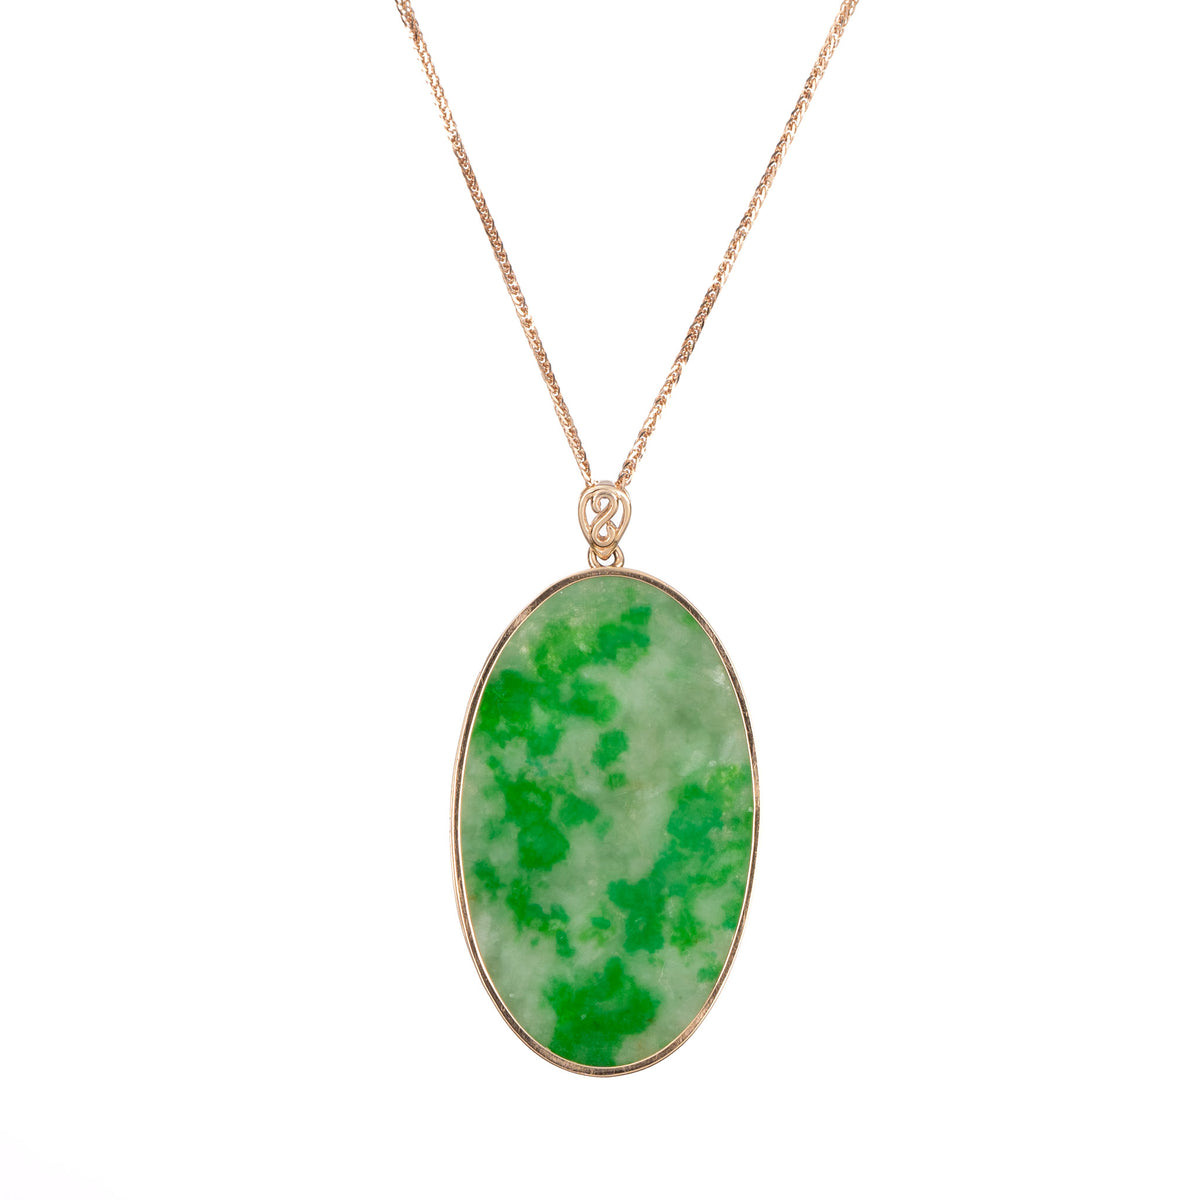 Oval Jade Pendant with Mottled Emerald Green Jadeite- Floral Frame